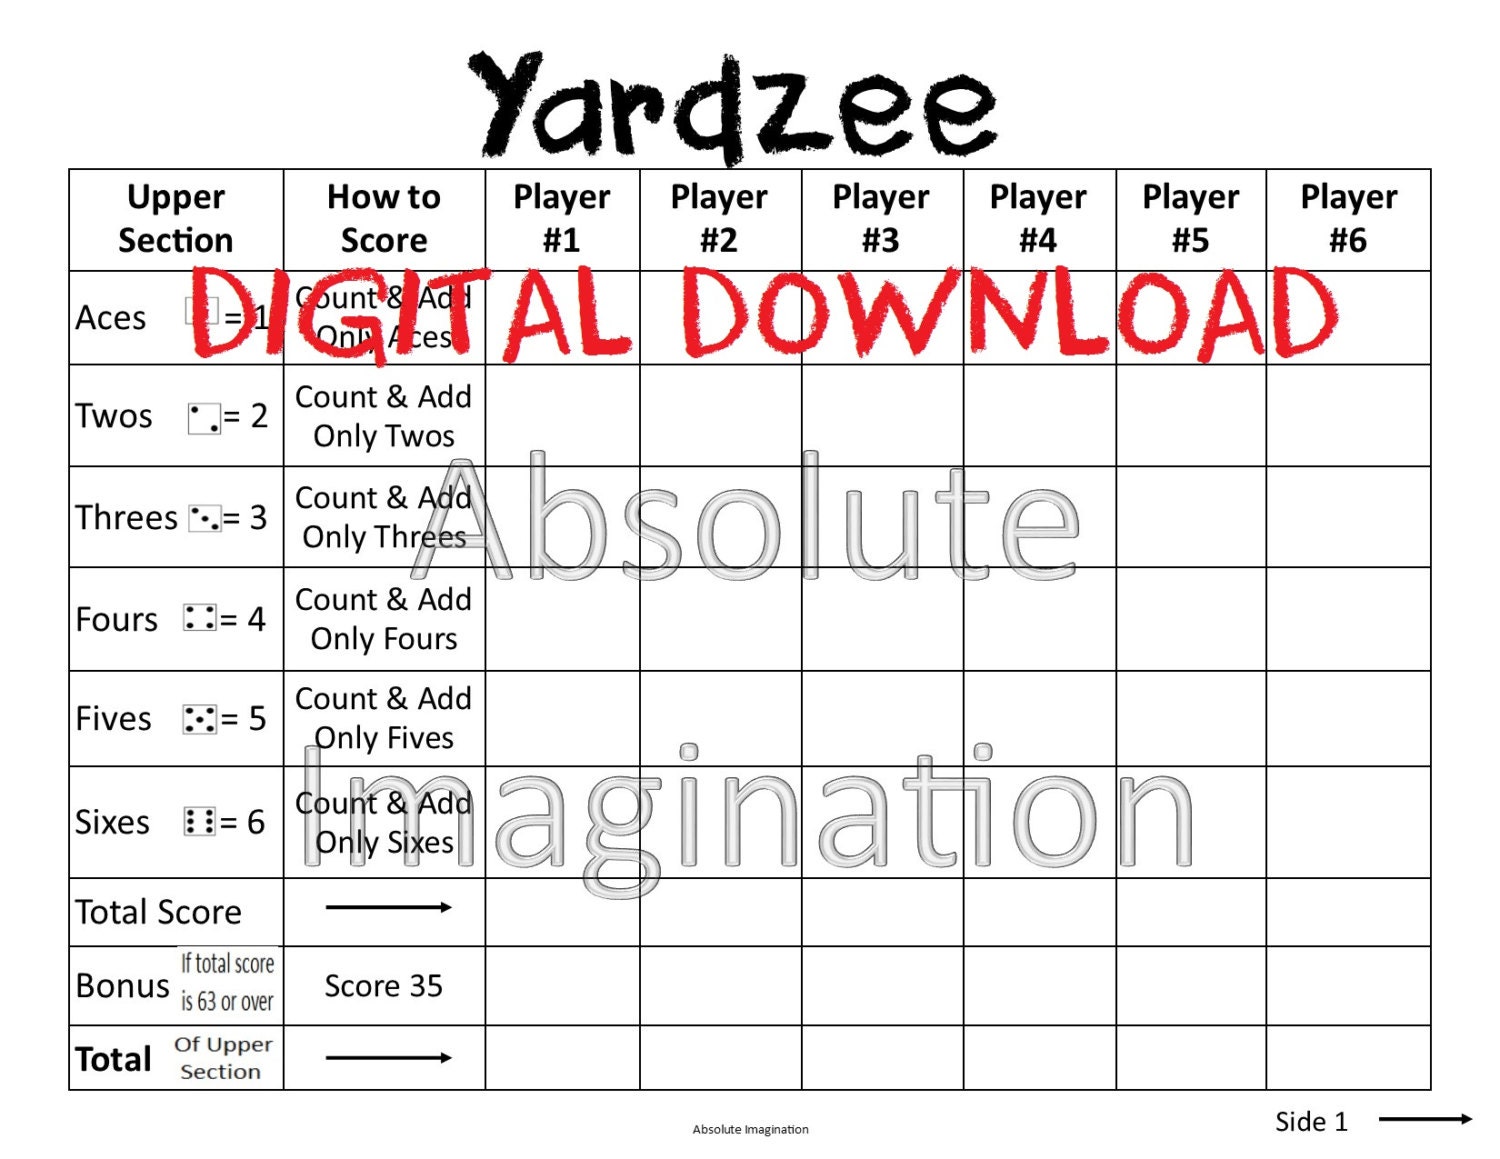 printable-large-print-yardzee-score-card-yardzee-board